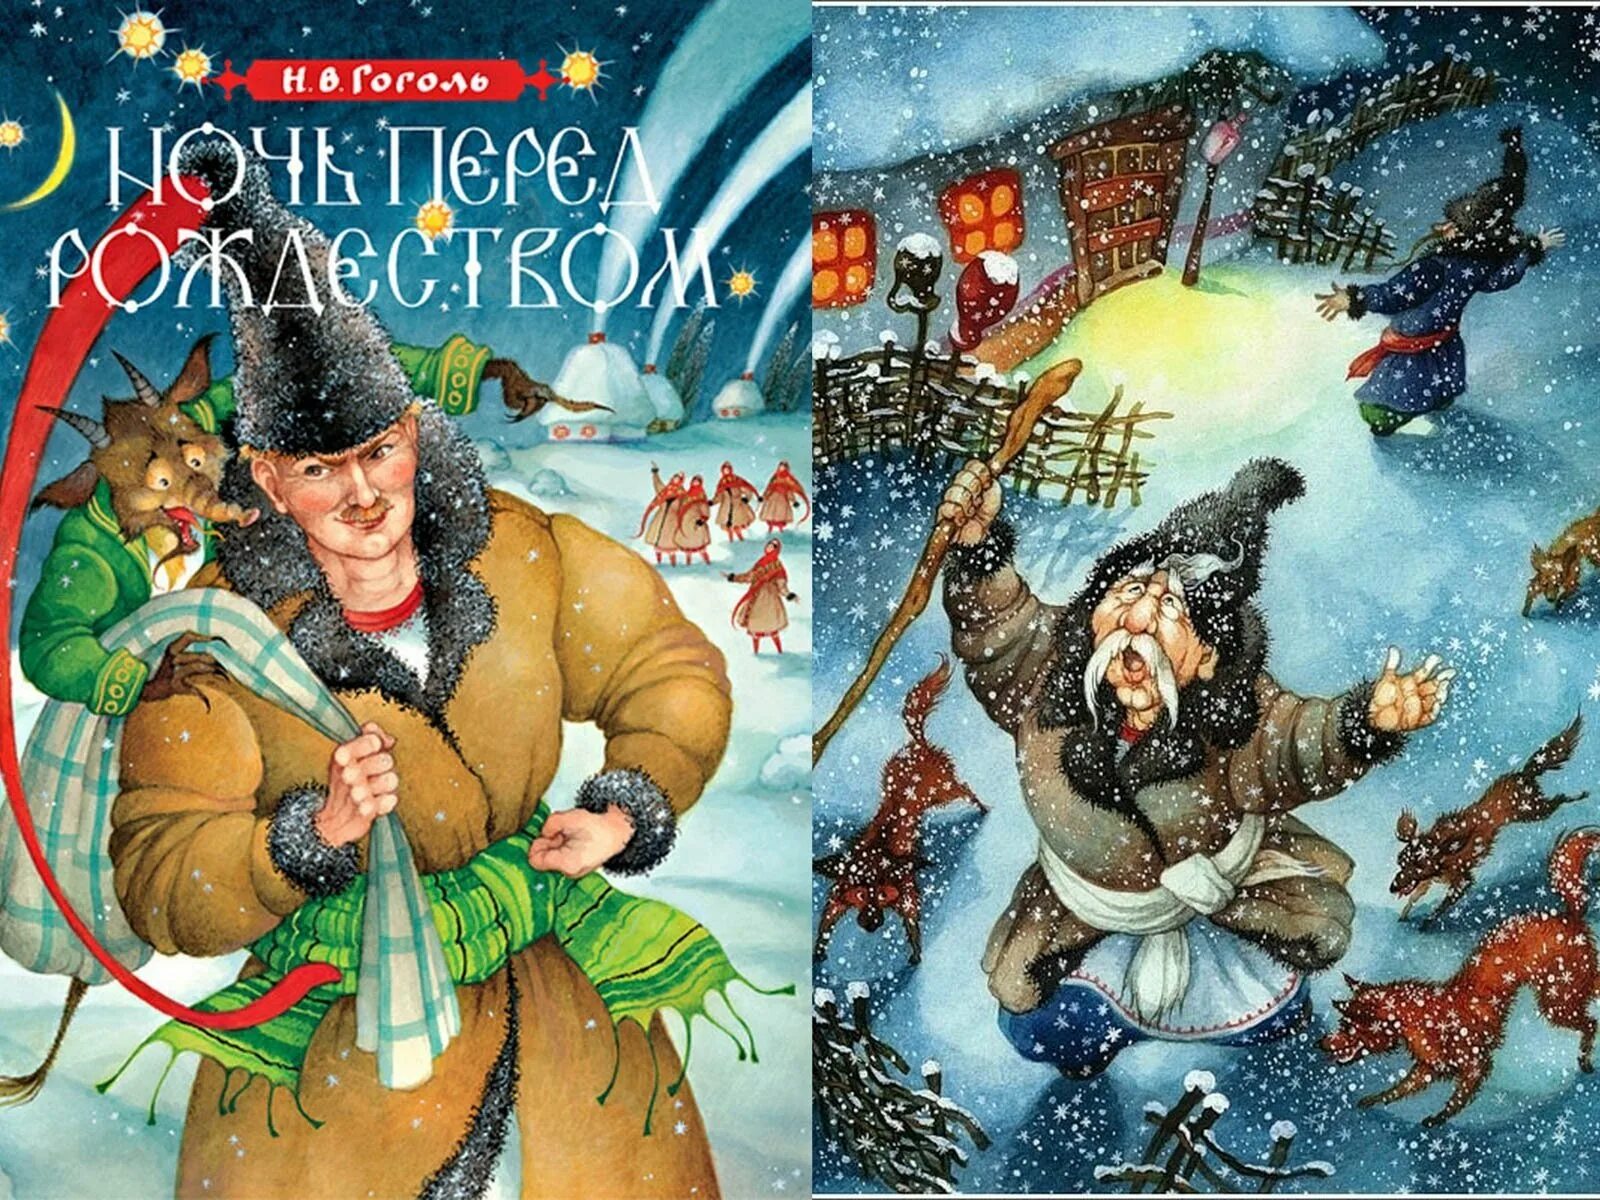 Дневник ночь перед рождеством. Н В Гоголь ночь перед Рождеством. Иллюстрации к книге Гоголя ночь перед Рождеством. Иллюстрацию к произведению н.в.Гоголя "ночь перед Рождеством".